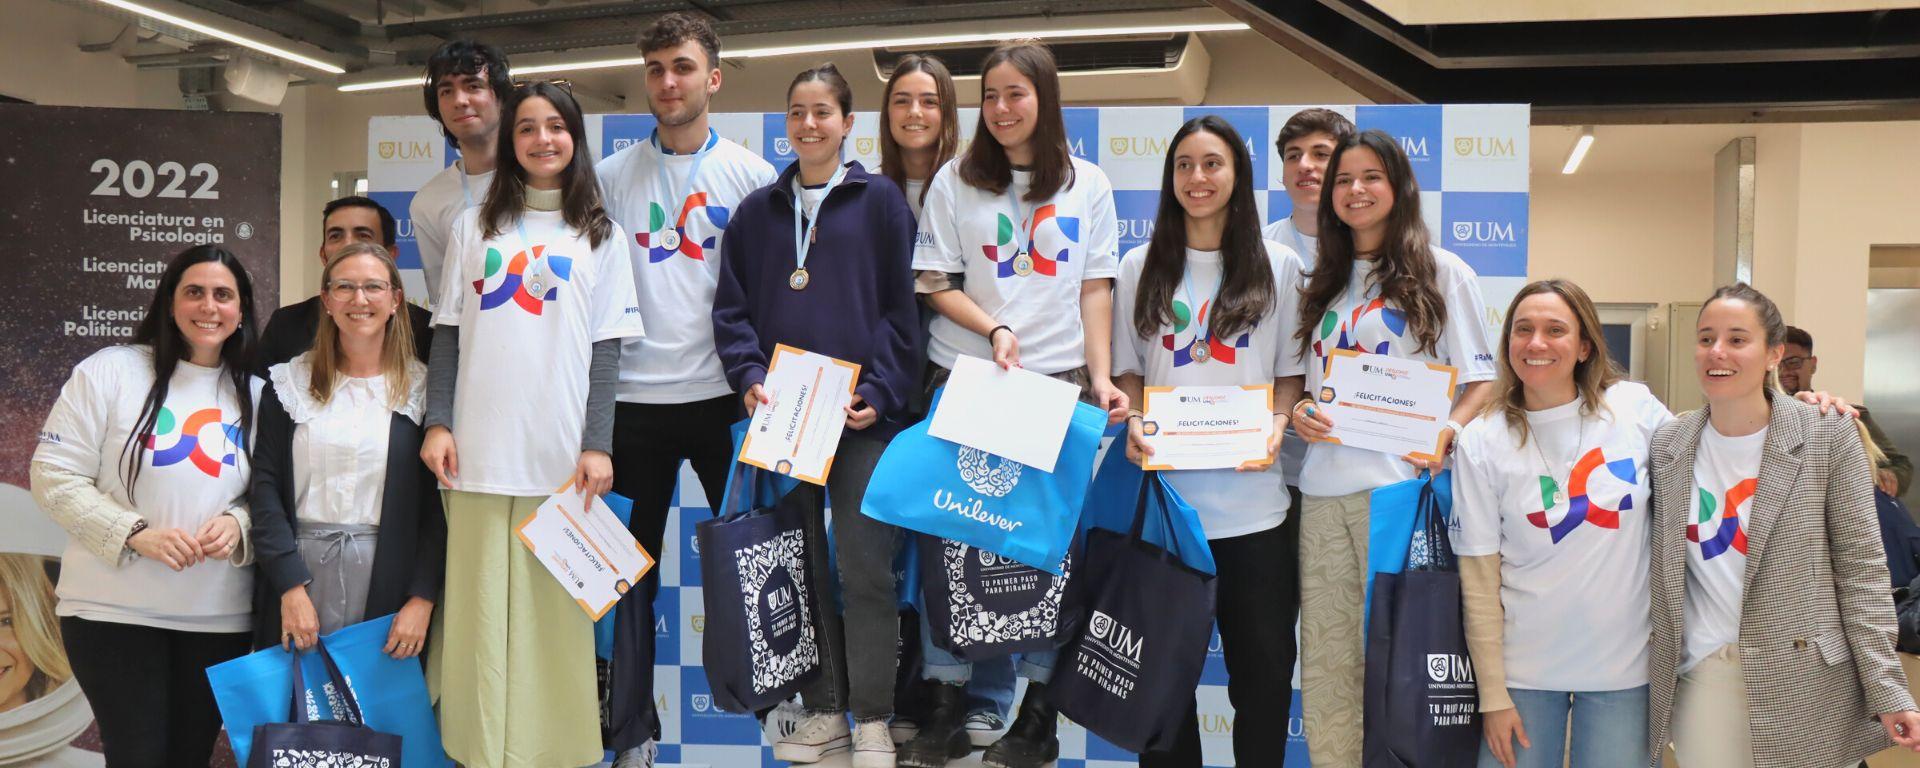 Grupo de preuniversitarios posan con premios, junto a organizadores del Challenge UM. Visten camisetas con formas de colores que identifican a la campaña 2022 de la UM.